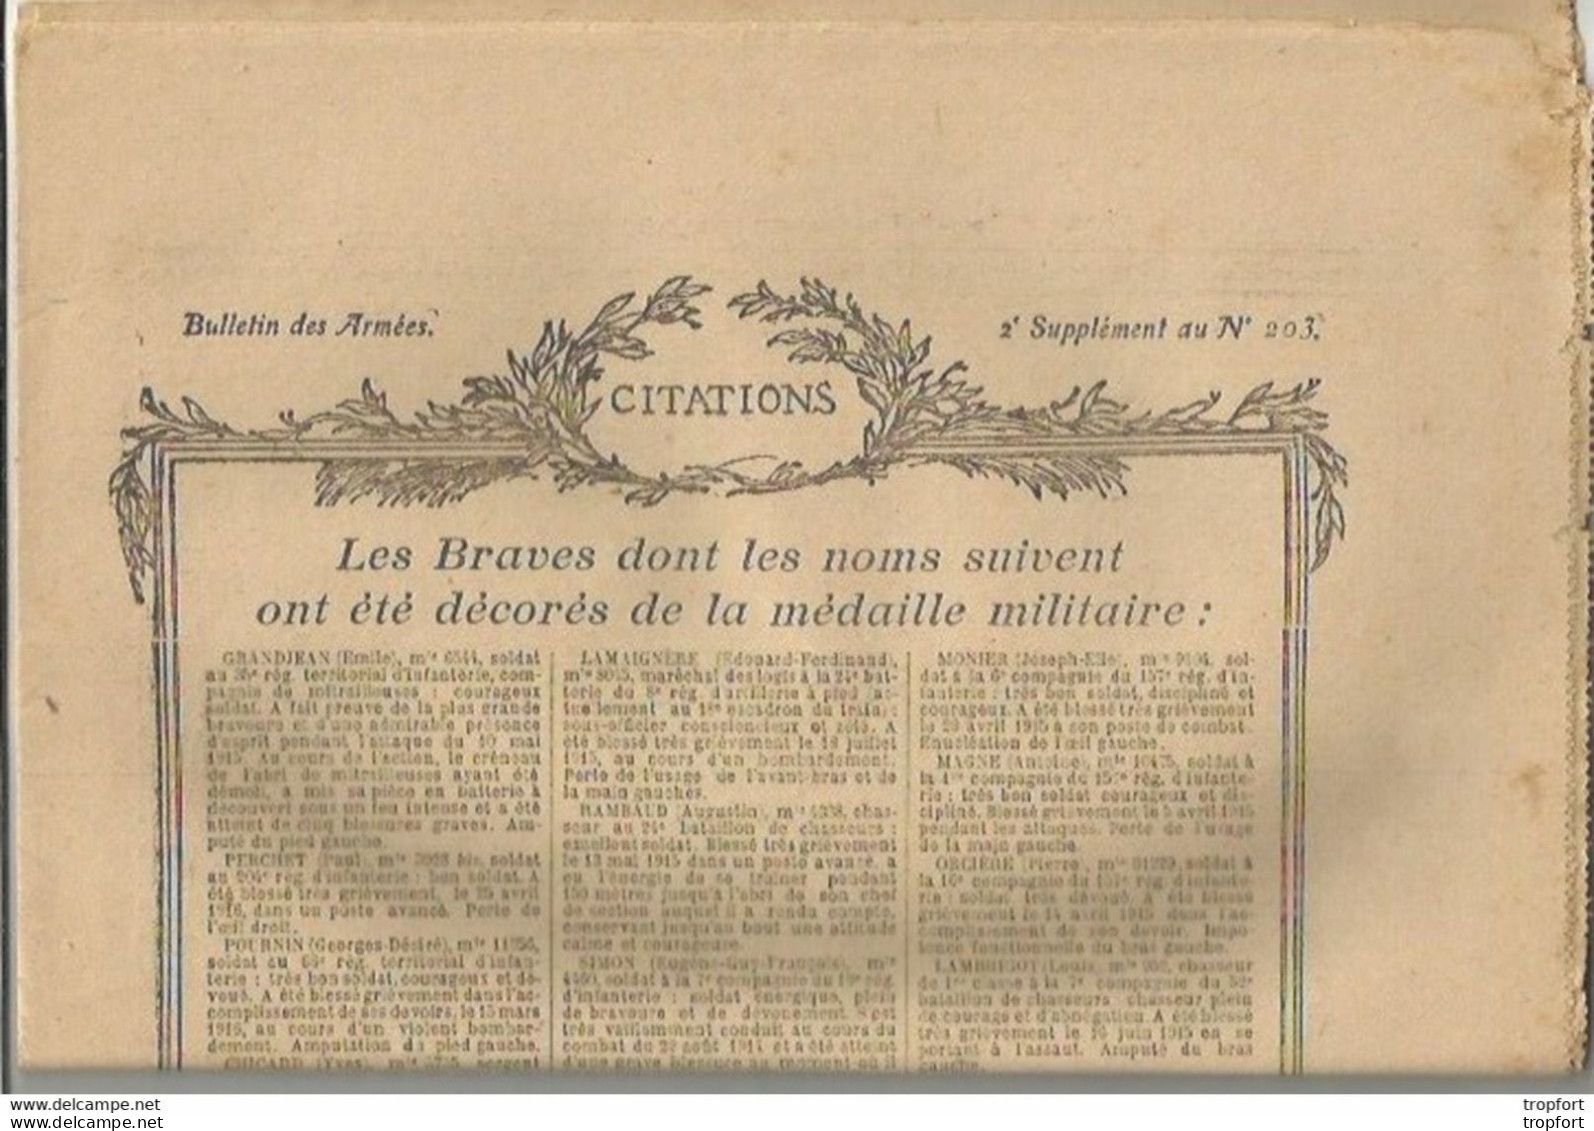 TH / Rare Journal BULLETIN DES ARMEES CITATIONS N°203 WW1 16 Pages MILITAIRES Citation 1914 1918 Guerre Bléssés - Algemene Informatie